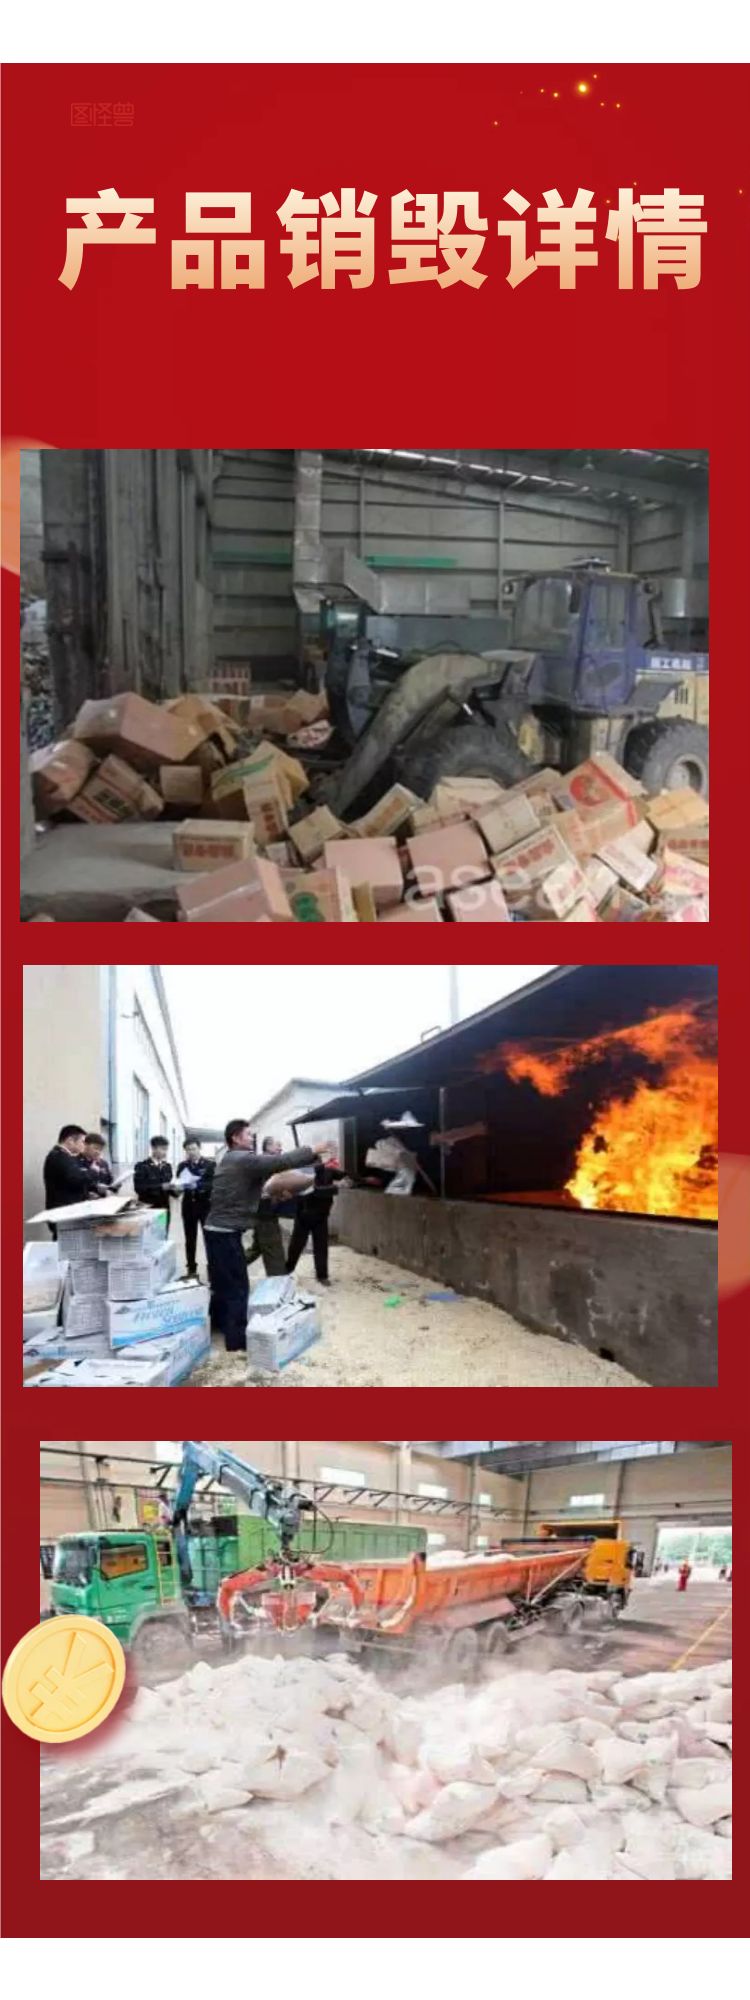 广州保税区报废货物销毁单位当日现场焚烧完成